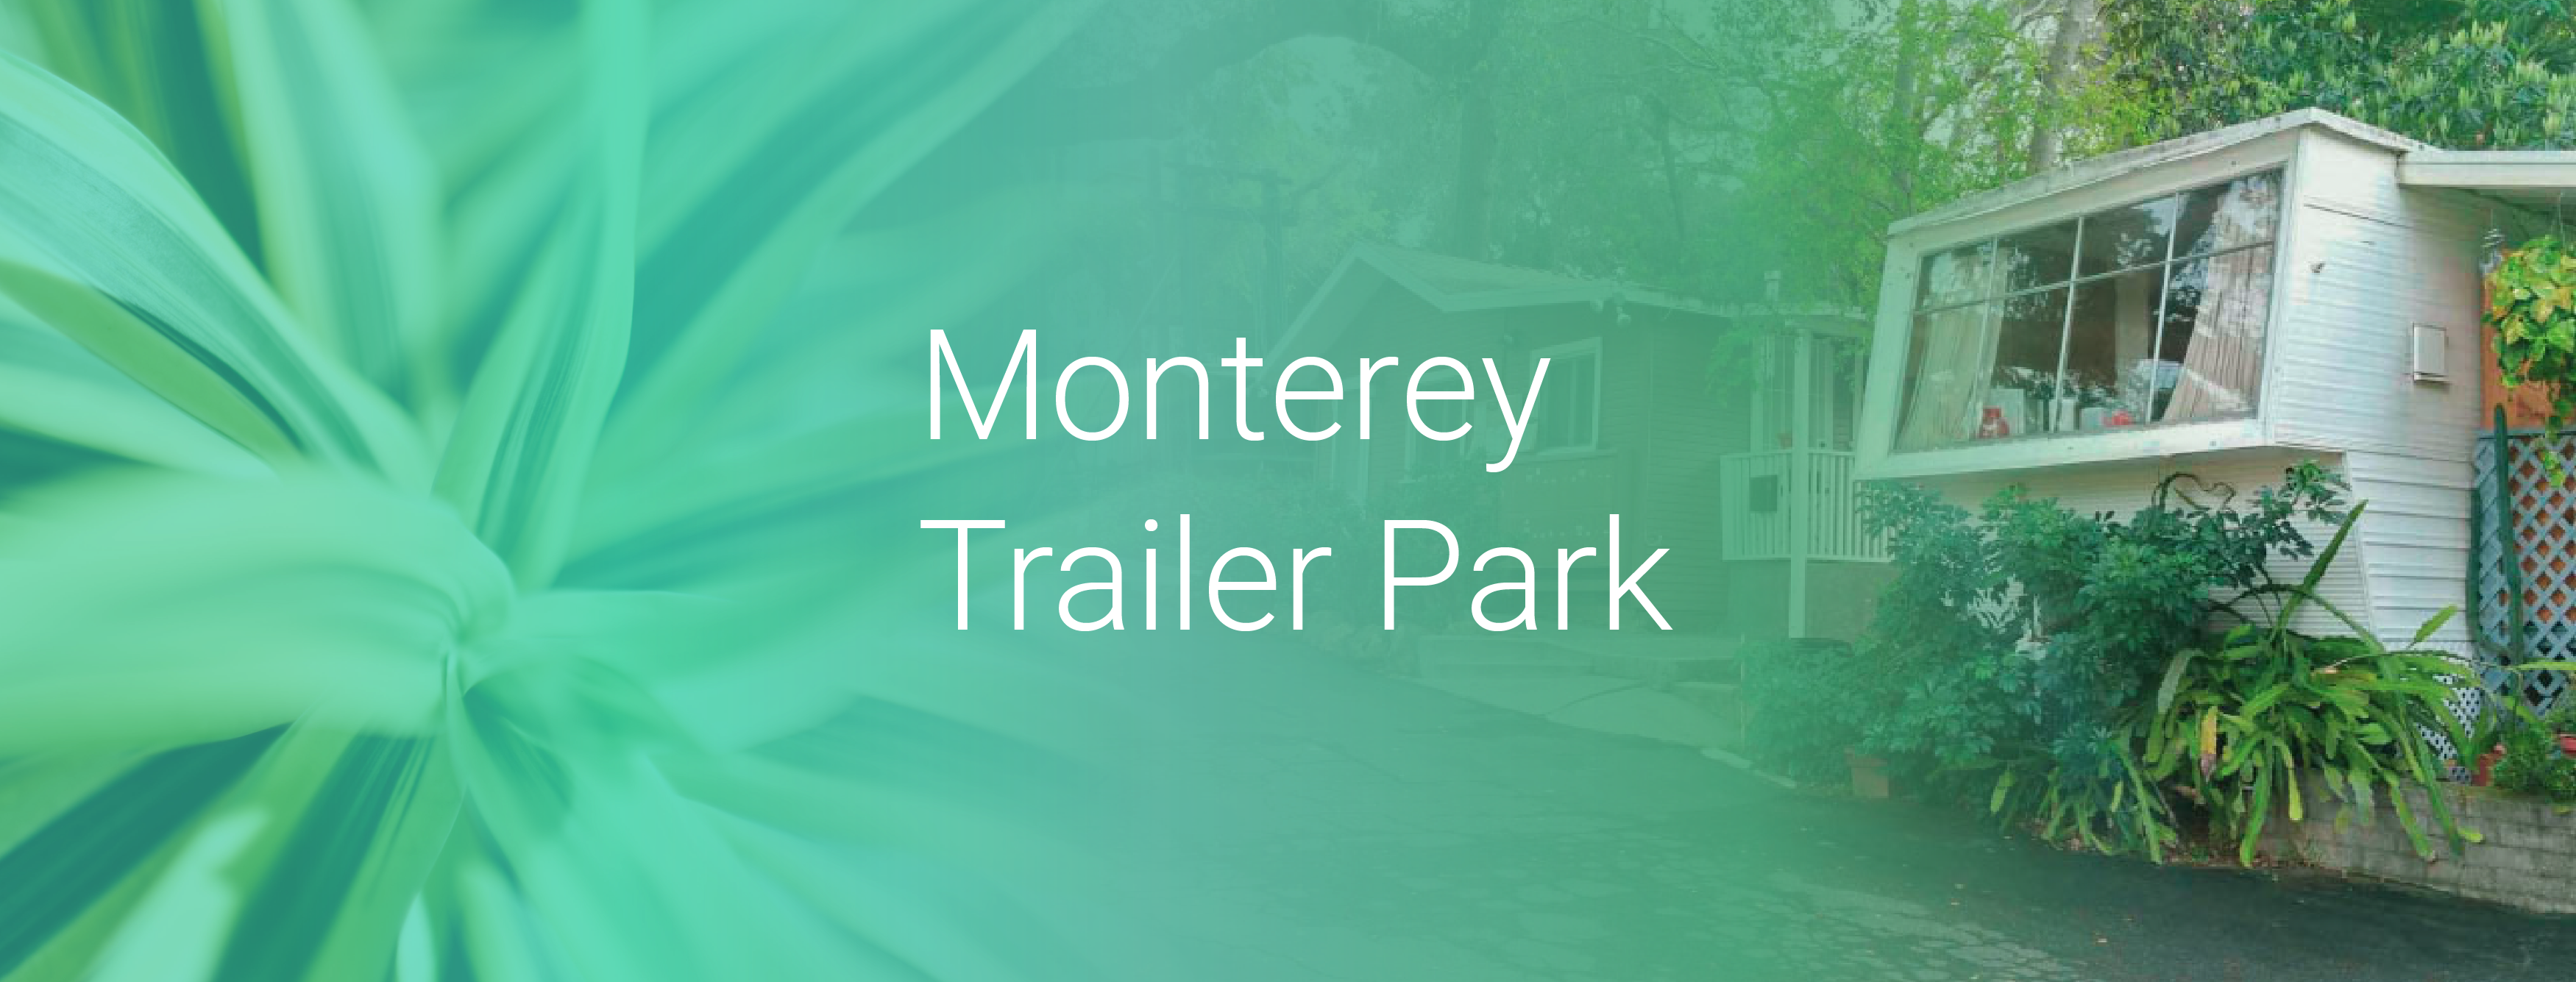 Monterey Trailer Park